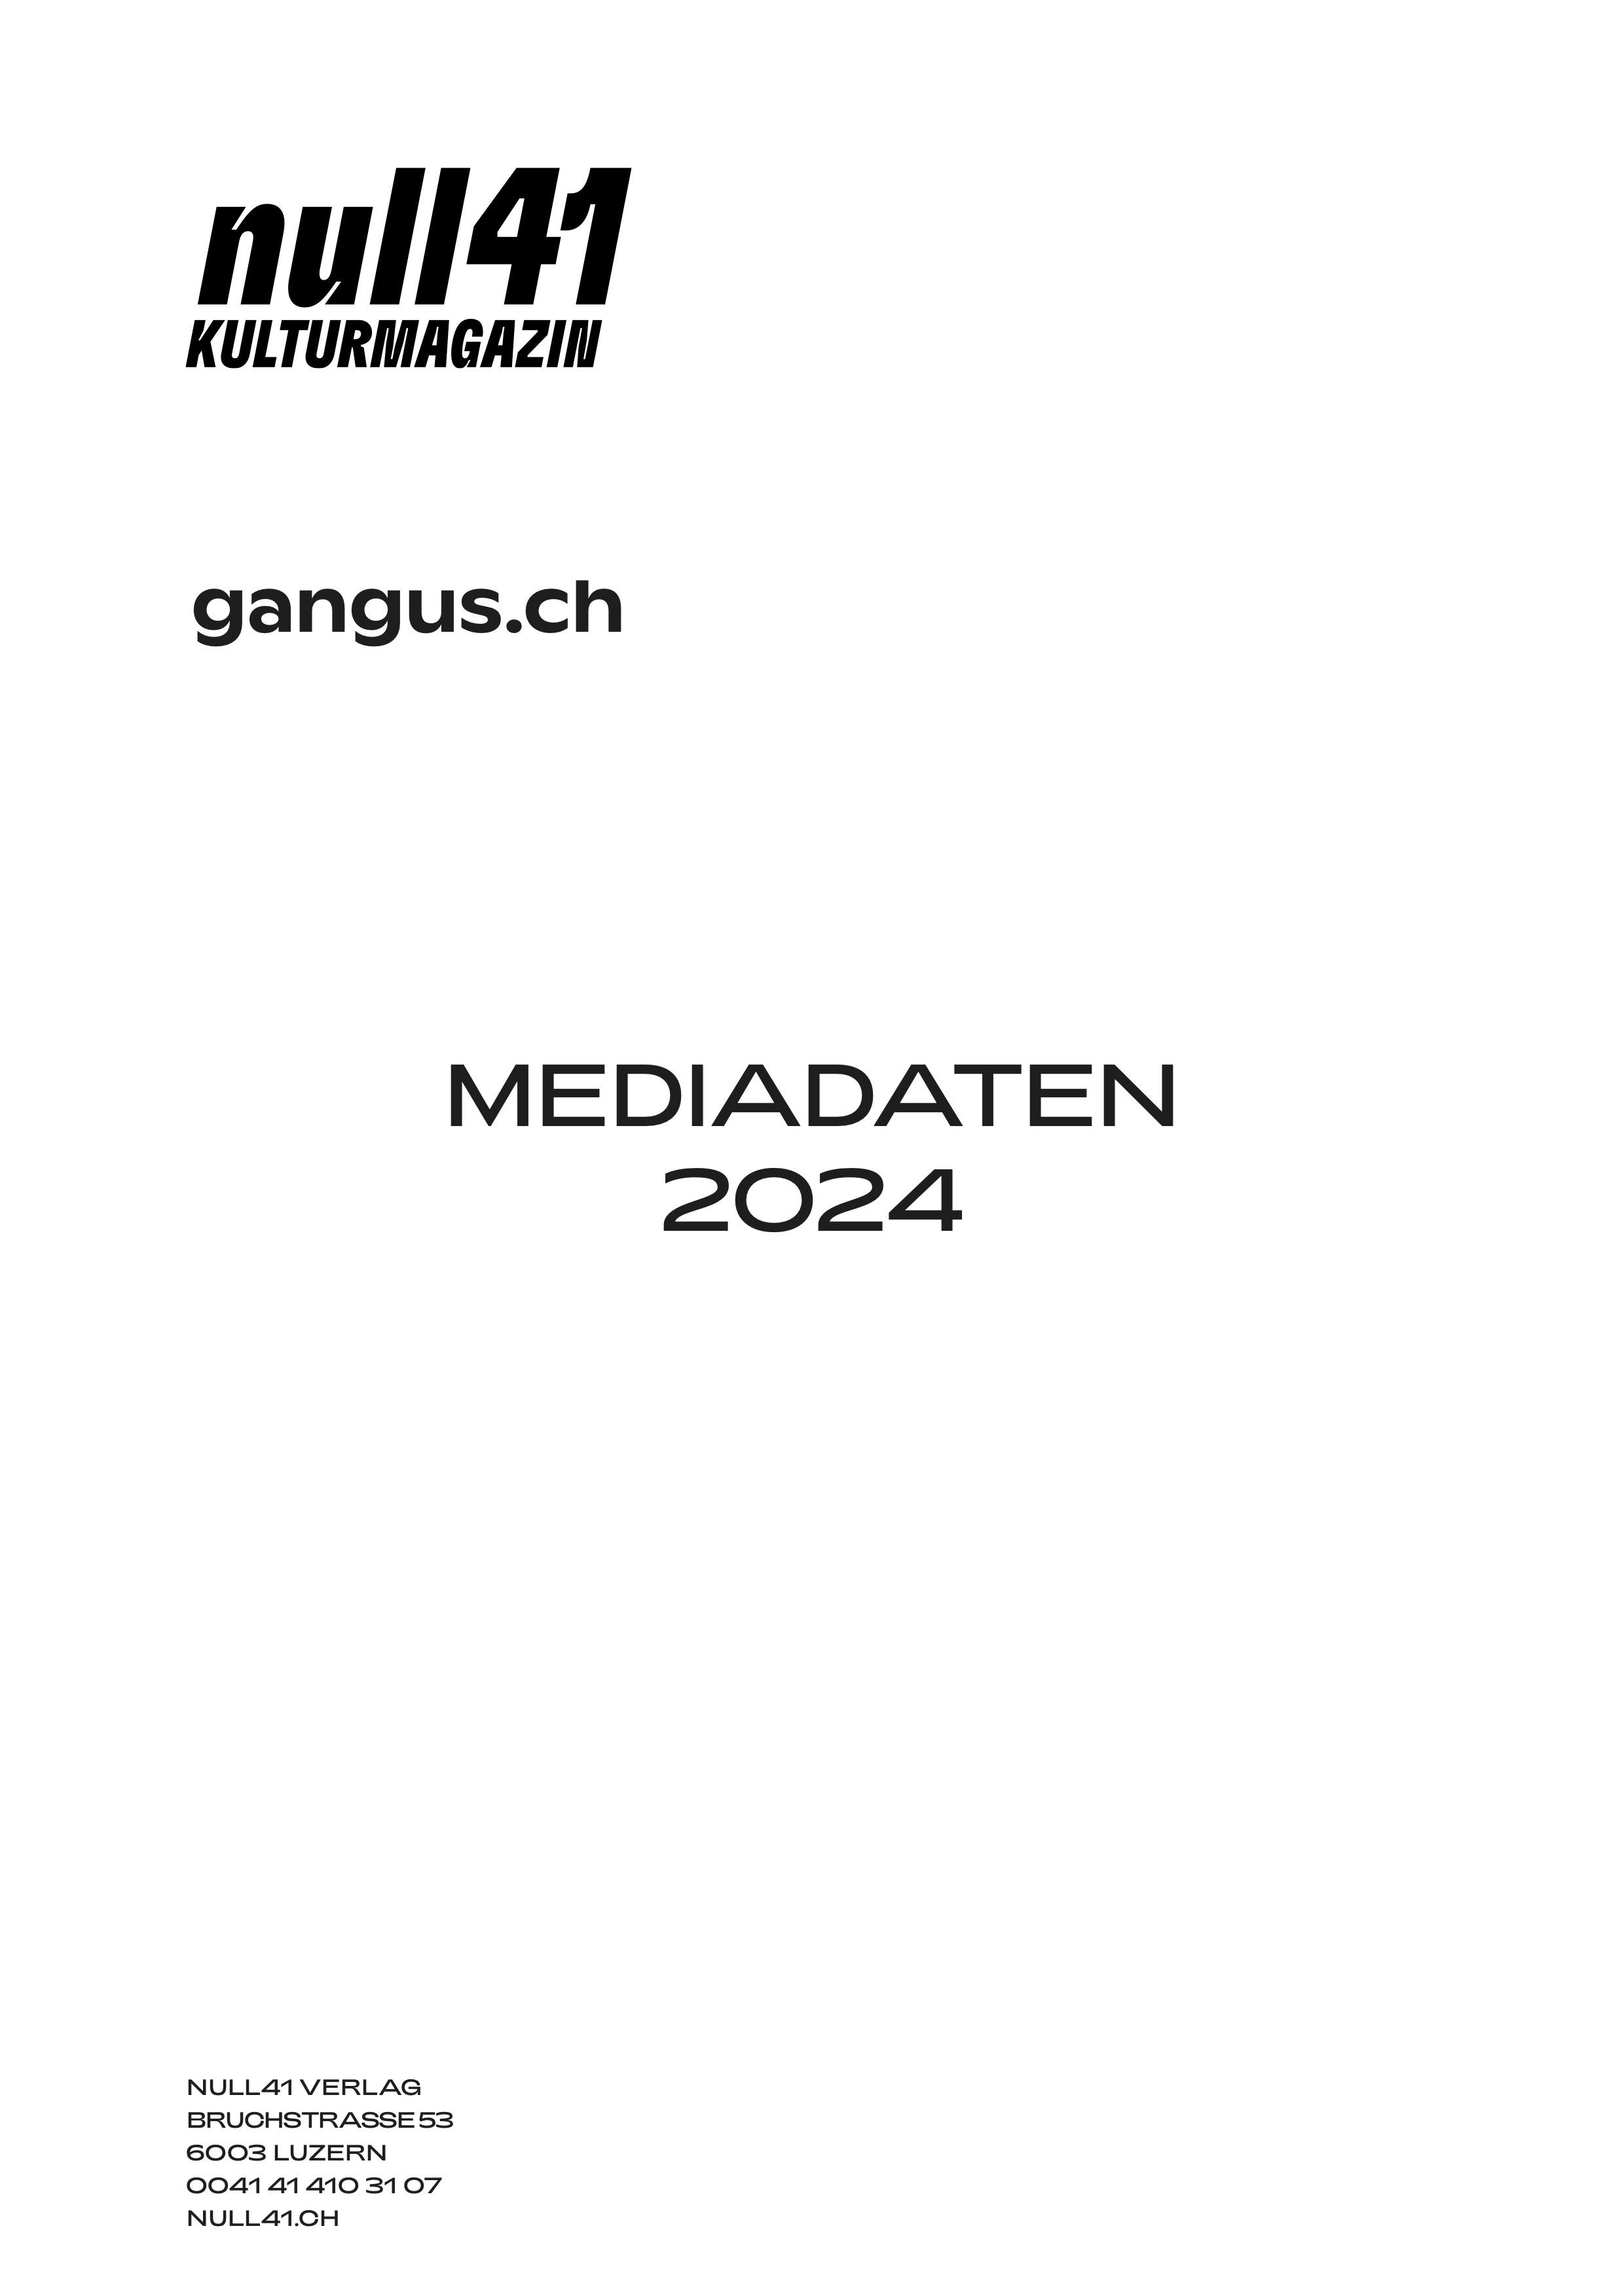 null41 Kulturmagazin und gangus.ch Mediadaten 2024